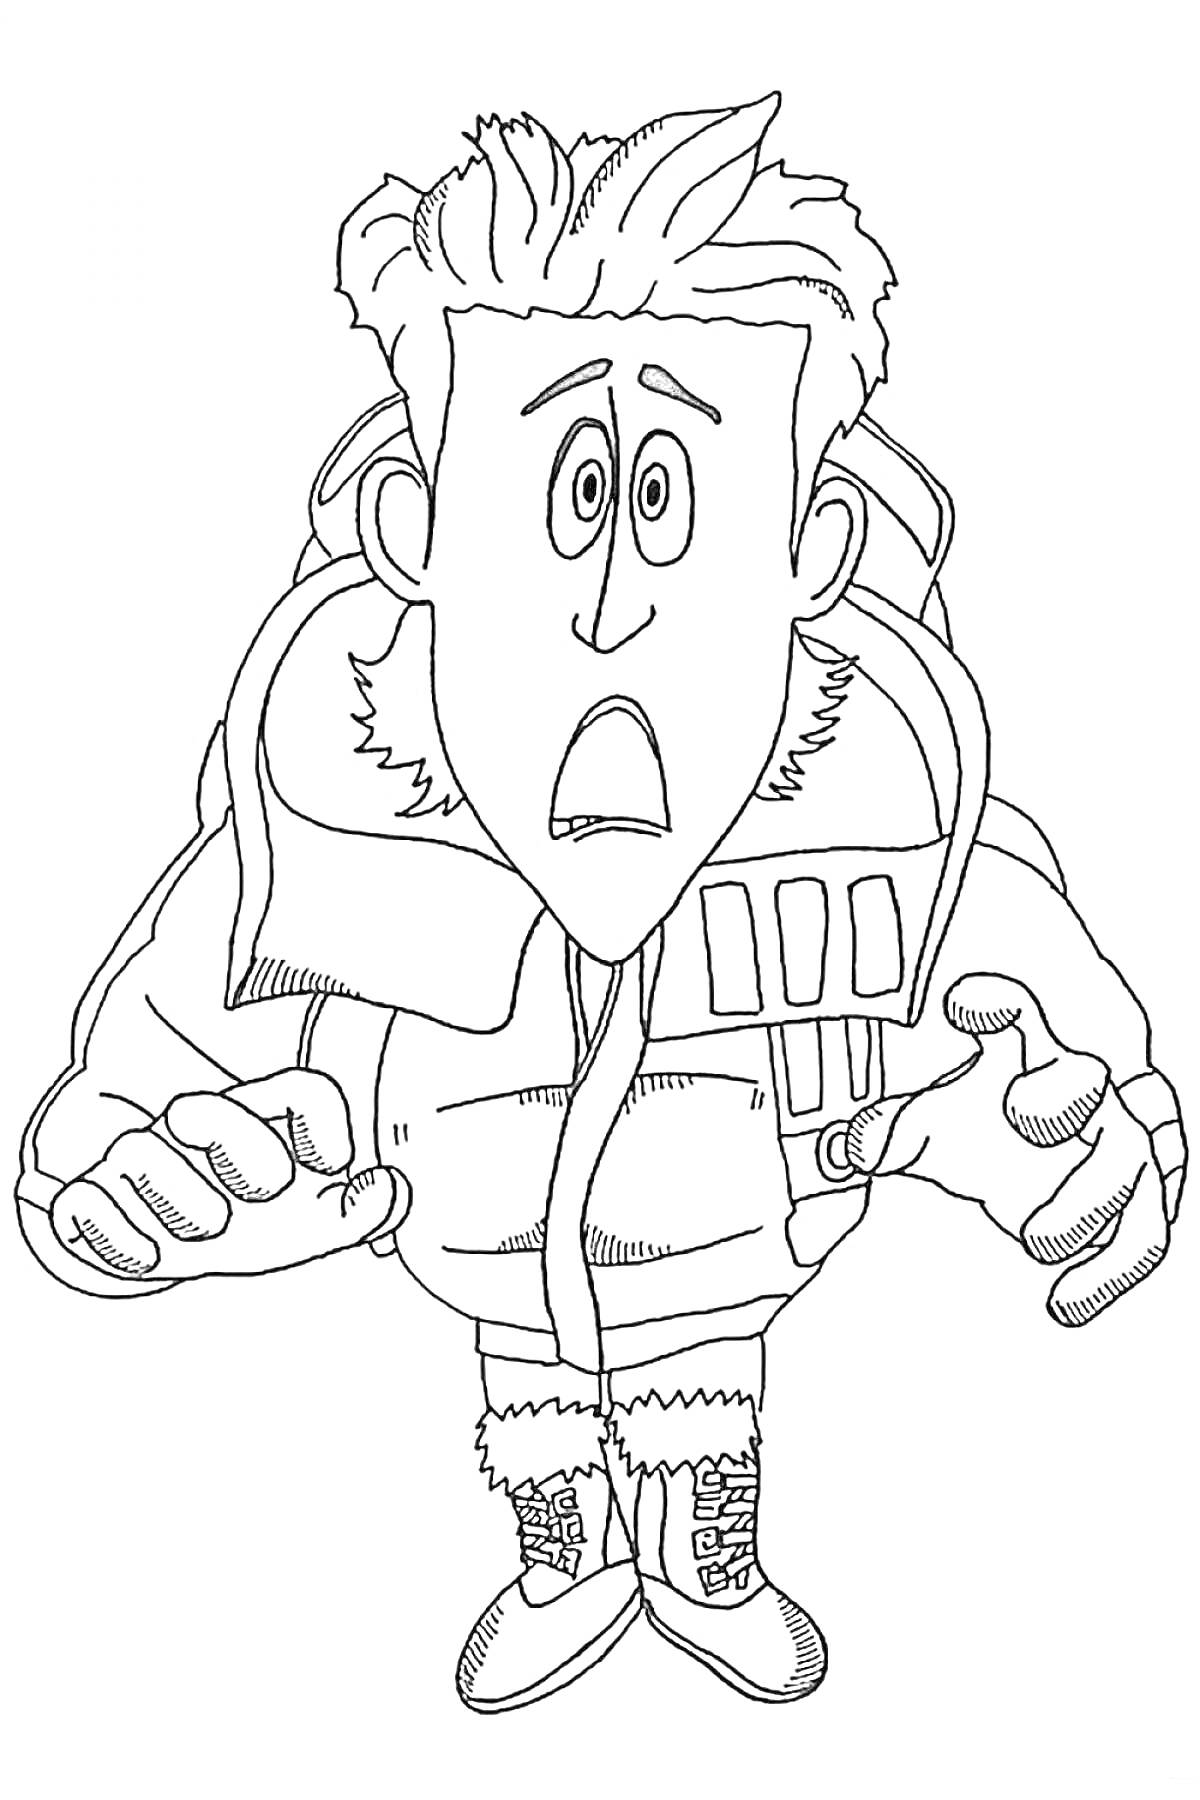 Раскраска Мужчина в зимней одежде с перепуганным выражением лица